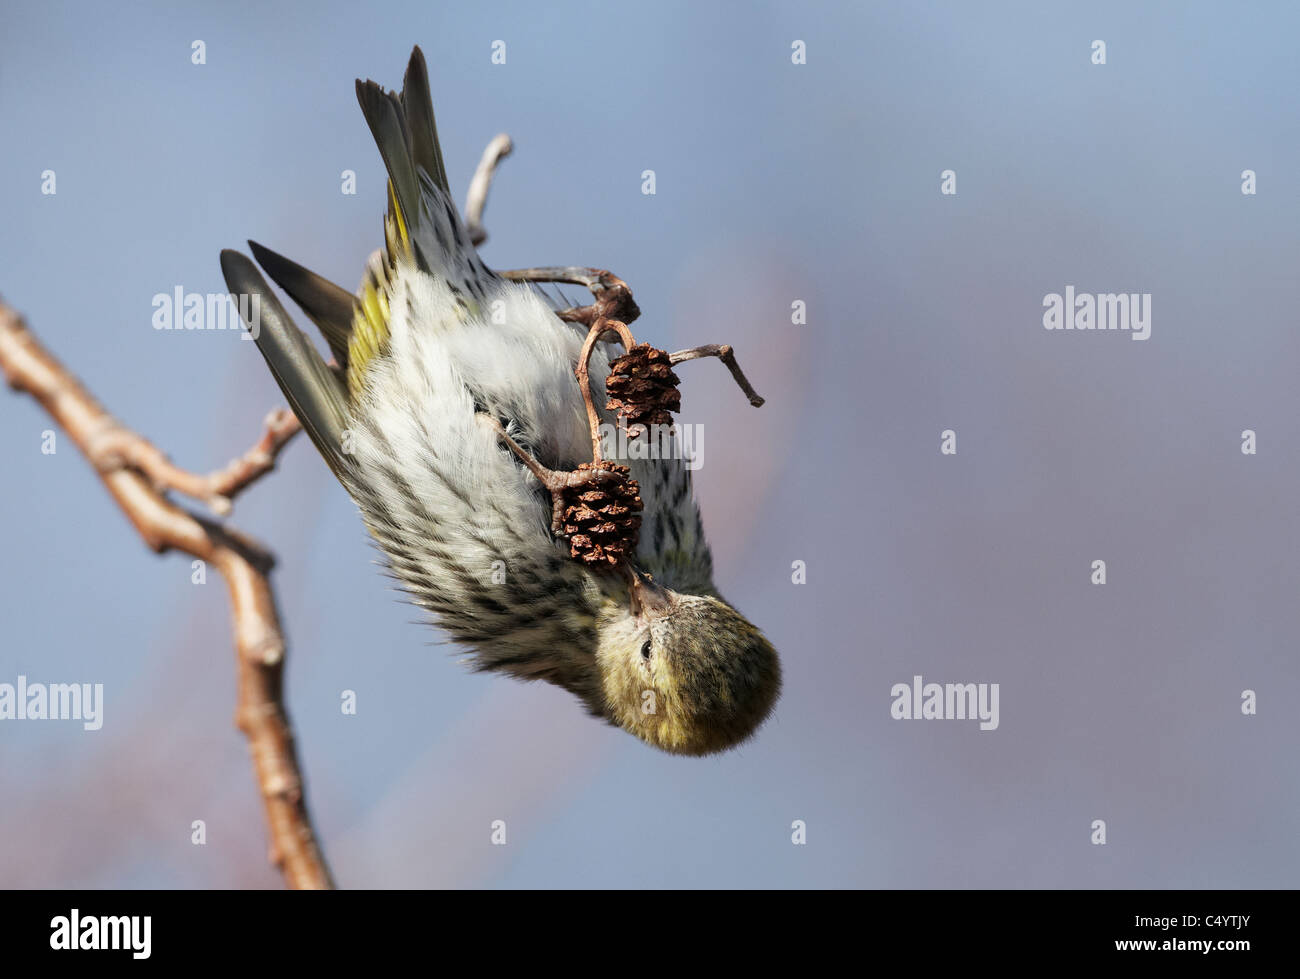 Eurasische Zeisig (Zuchtjahr Spinus) hängen kopfüber auf eine ältere Zweig während des Essens der Samen von einem Kegel. Stockfoto